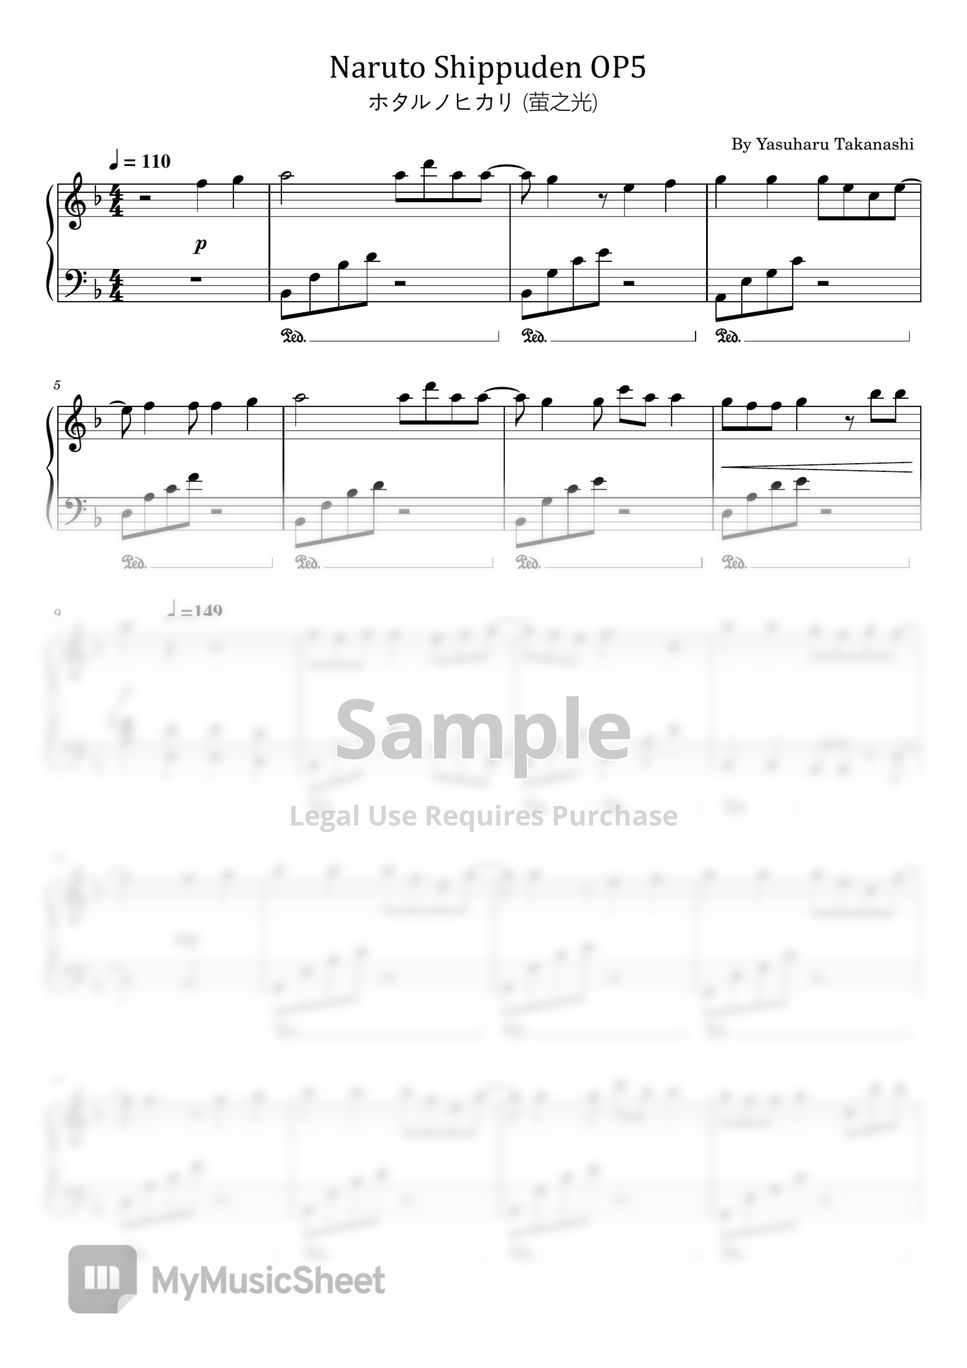 Yasuharu Takanashi - Naruto Shippuden OP5 (For Easy Piano) by poon